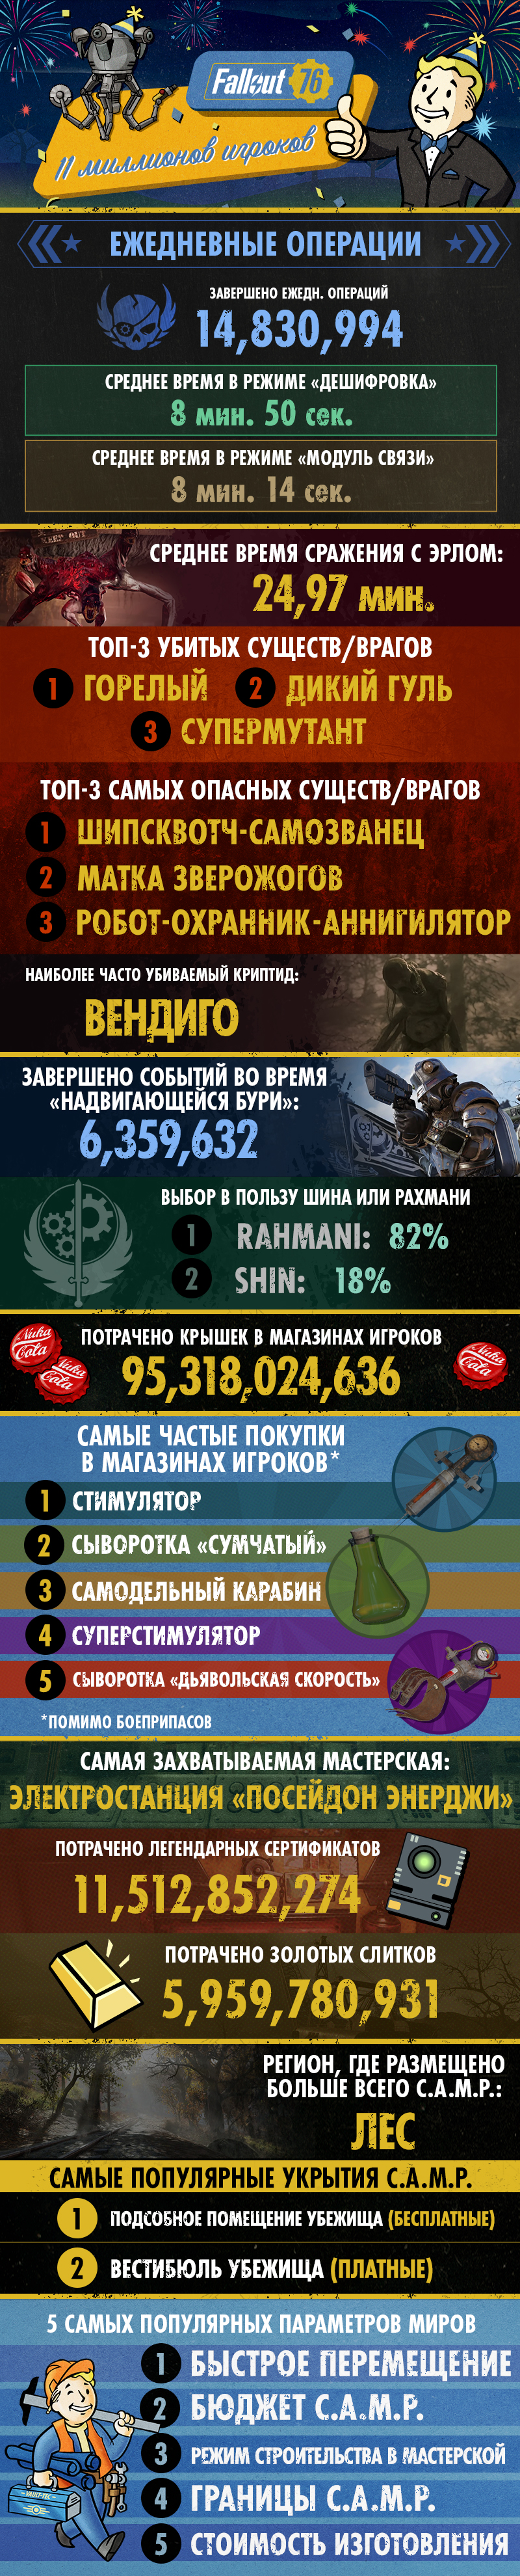 11 миллионов игроков и 95 миллиардов потраченных крышек — Fallout 76 исполнилось три года